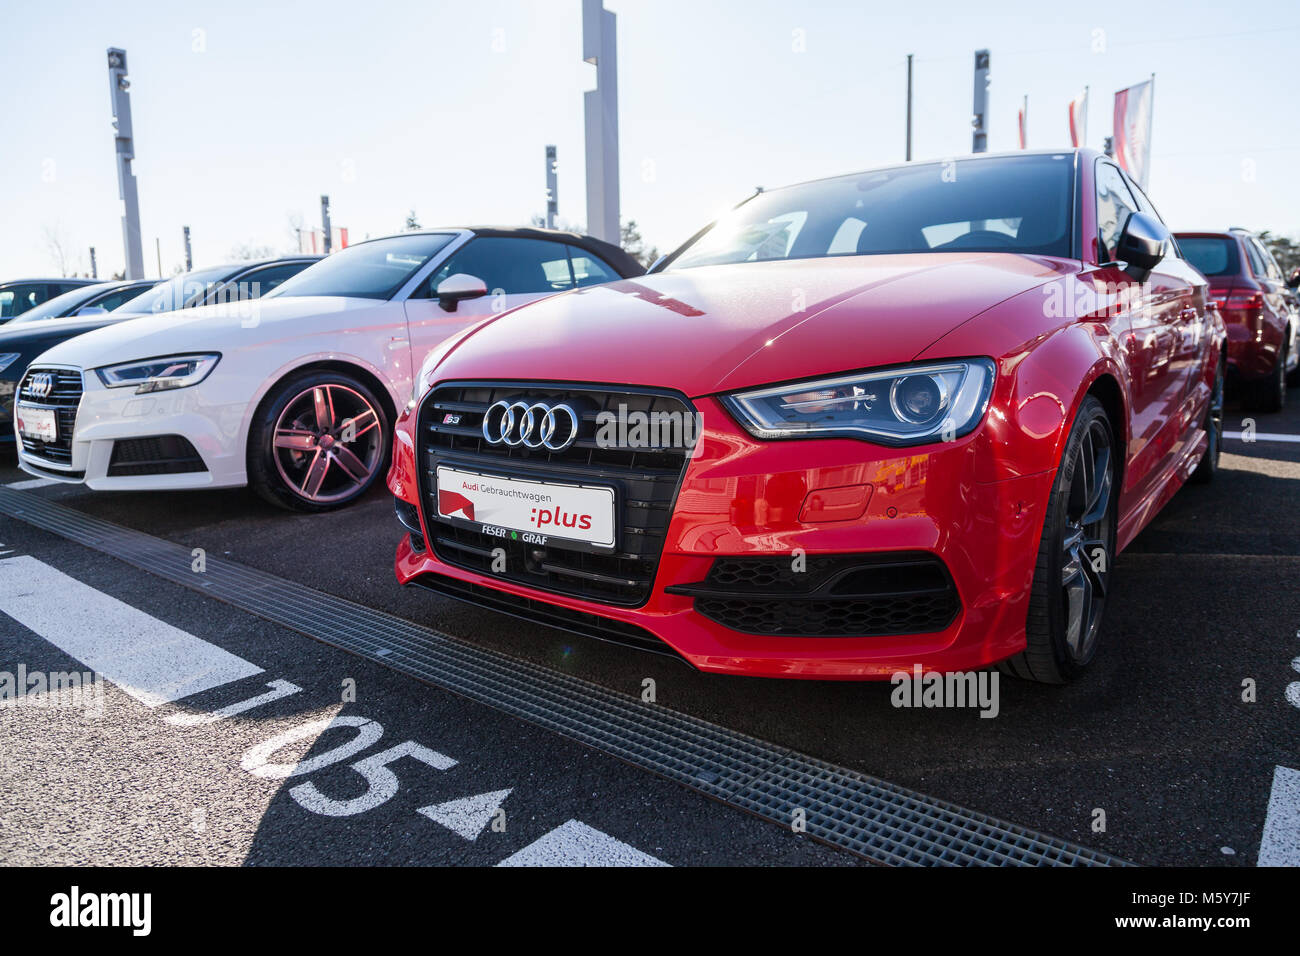 Fürth/Deutschland - am 25. FEBRUAR 2018: Audi Emblem auf einem Audi Auto. Die Audi AG ist ein deutscher Automobilhersteller, Designs, Ingenieure, produziert, Marke Stockfoto